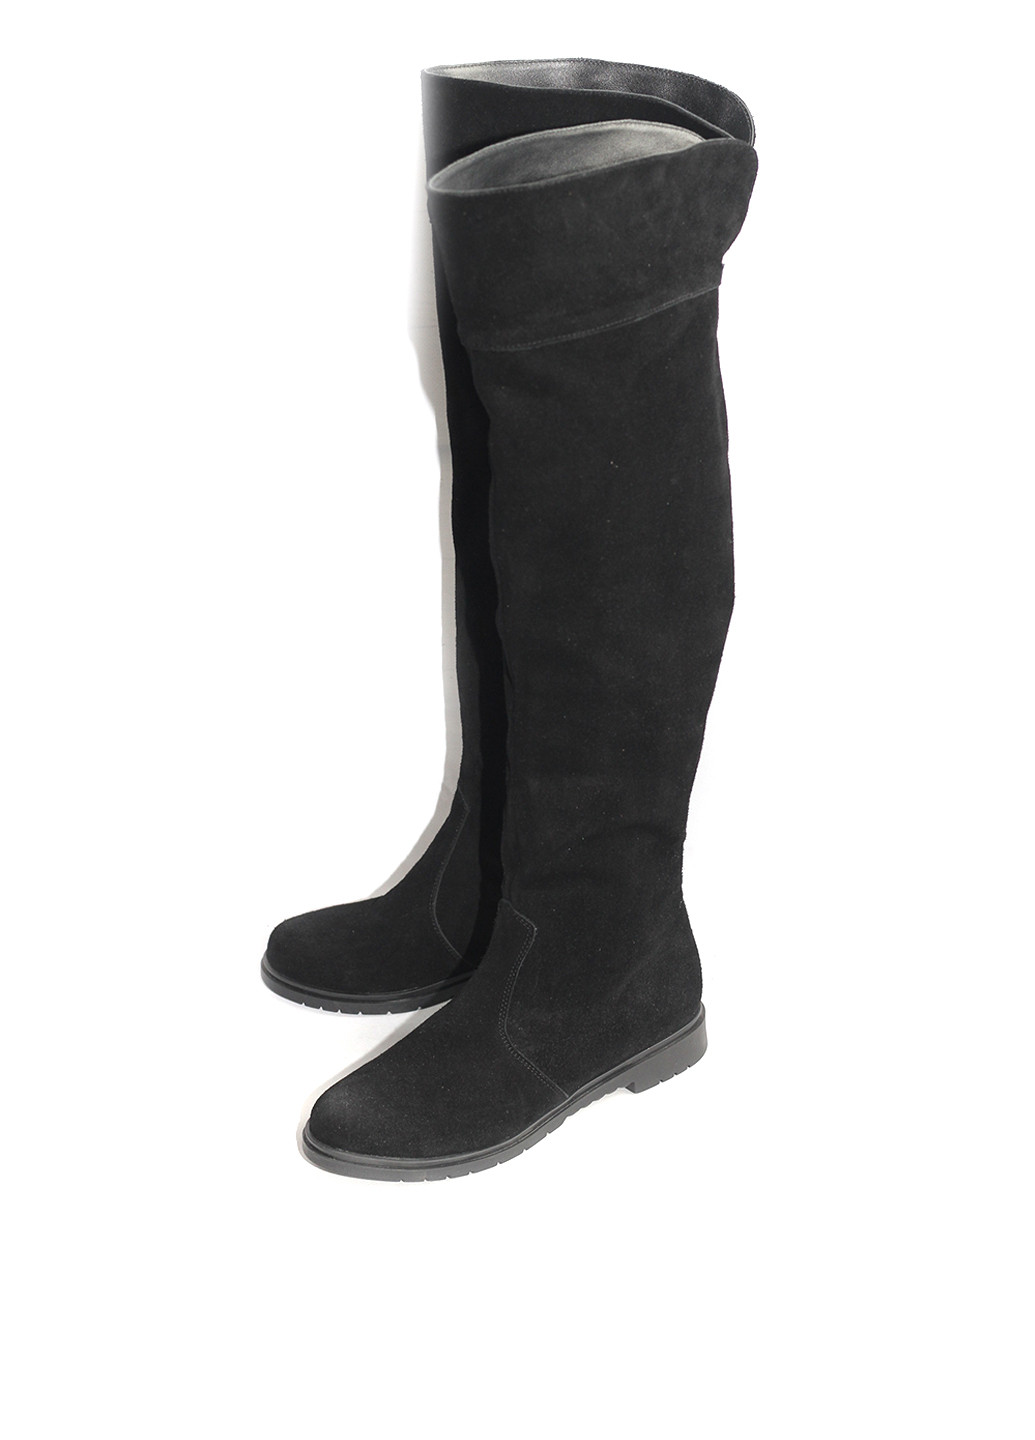 Черные осенние ботфорты Bernardini без каблука